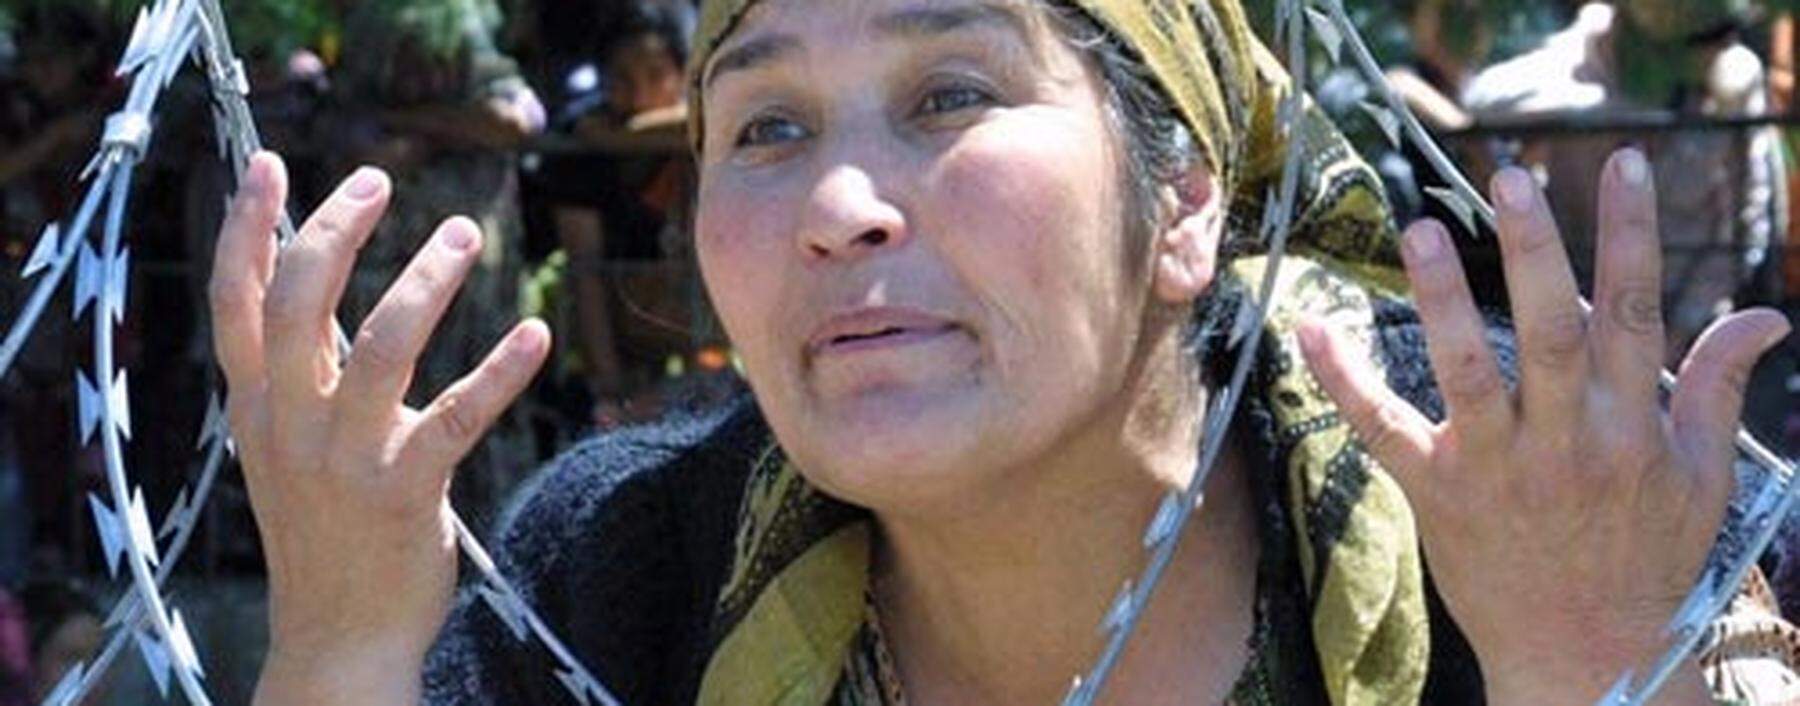 Kirgisistan: Zentralasiatisches Land im Chaos